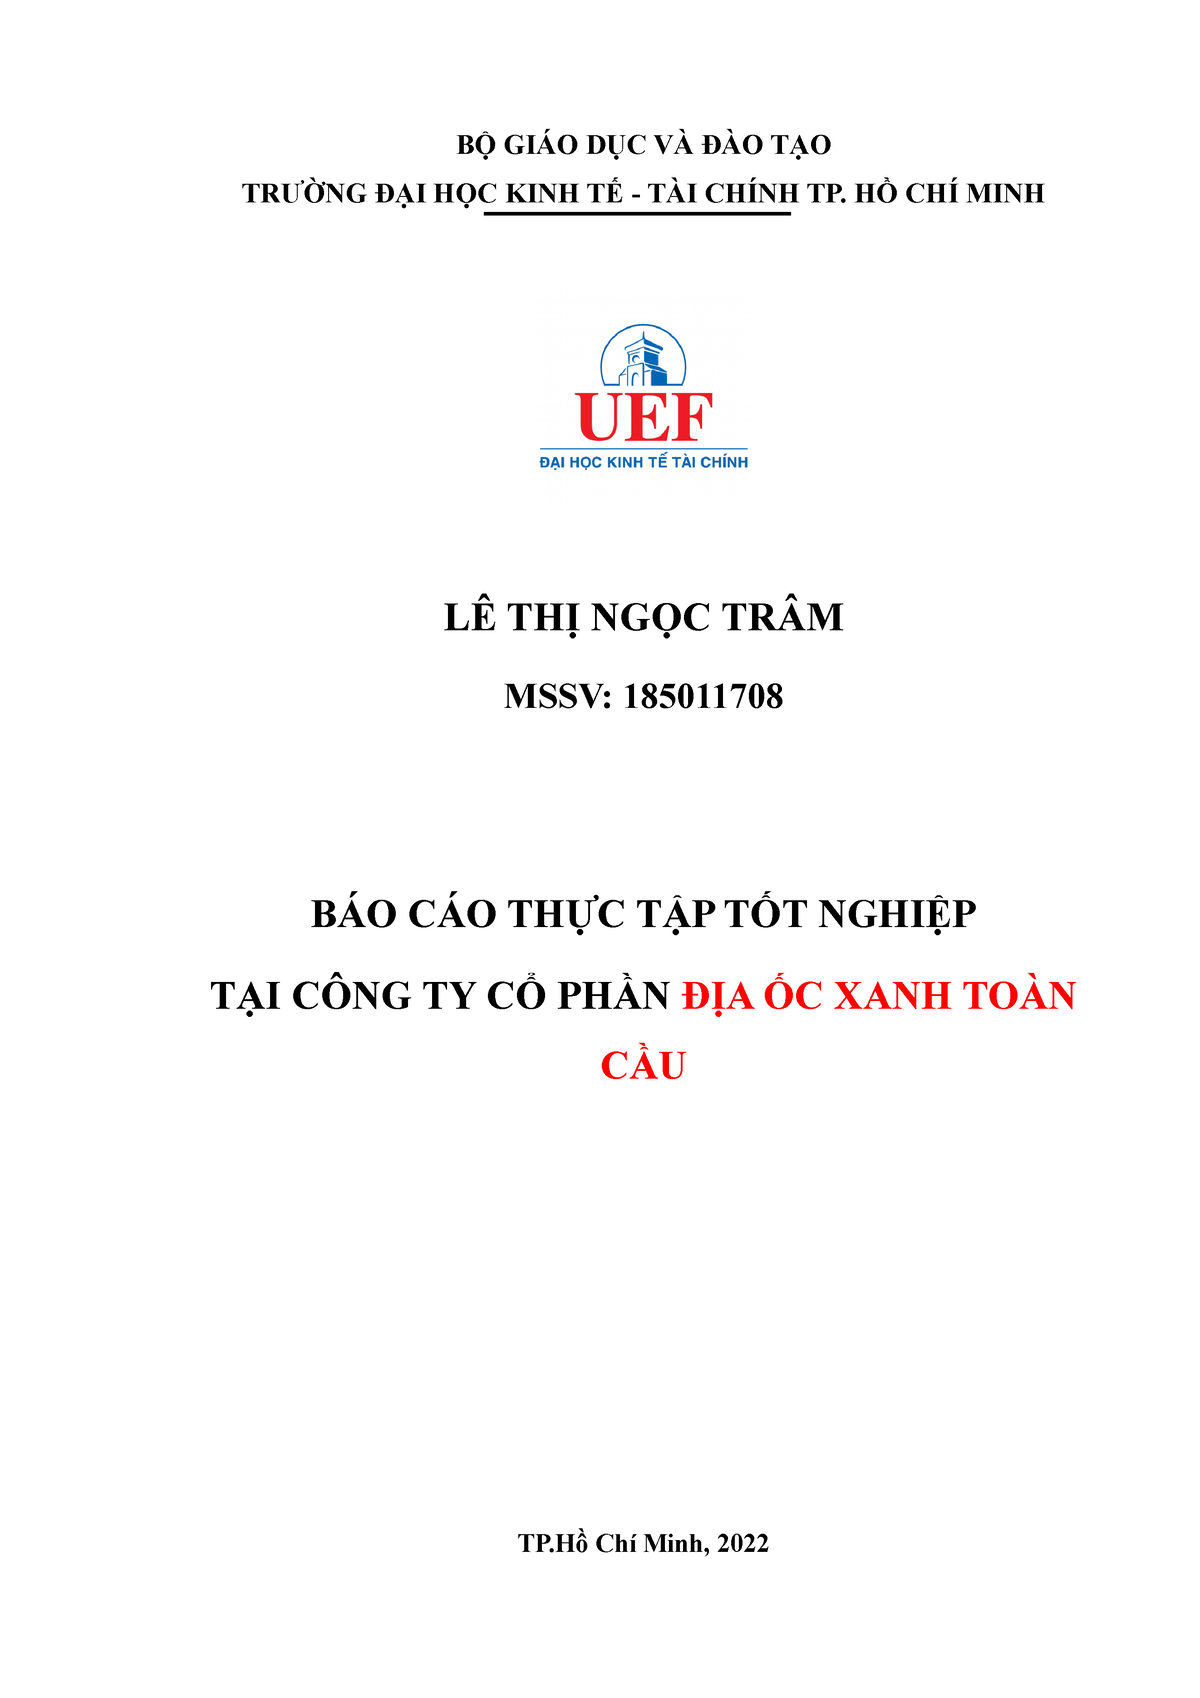 Le Thi Ngoc Tram - 185011708 - Bao cao thuc tap - BỘ GIÁO DỤC VÀ ĐÀO ...